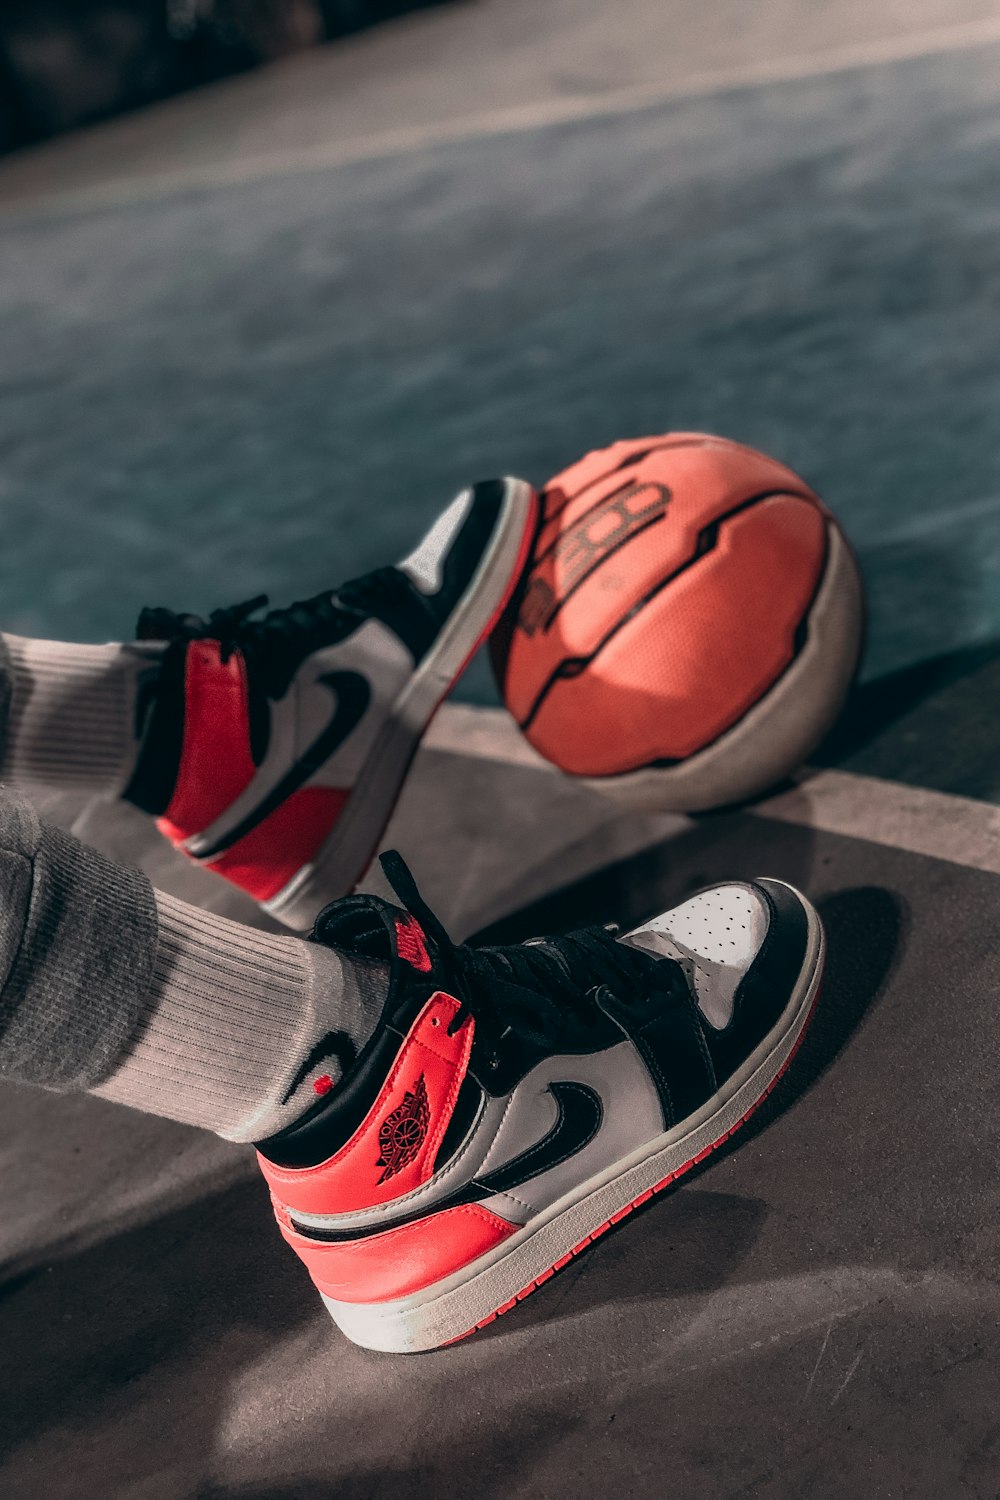 Persona con zapatillas de baloncesto Nike negras y rojas